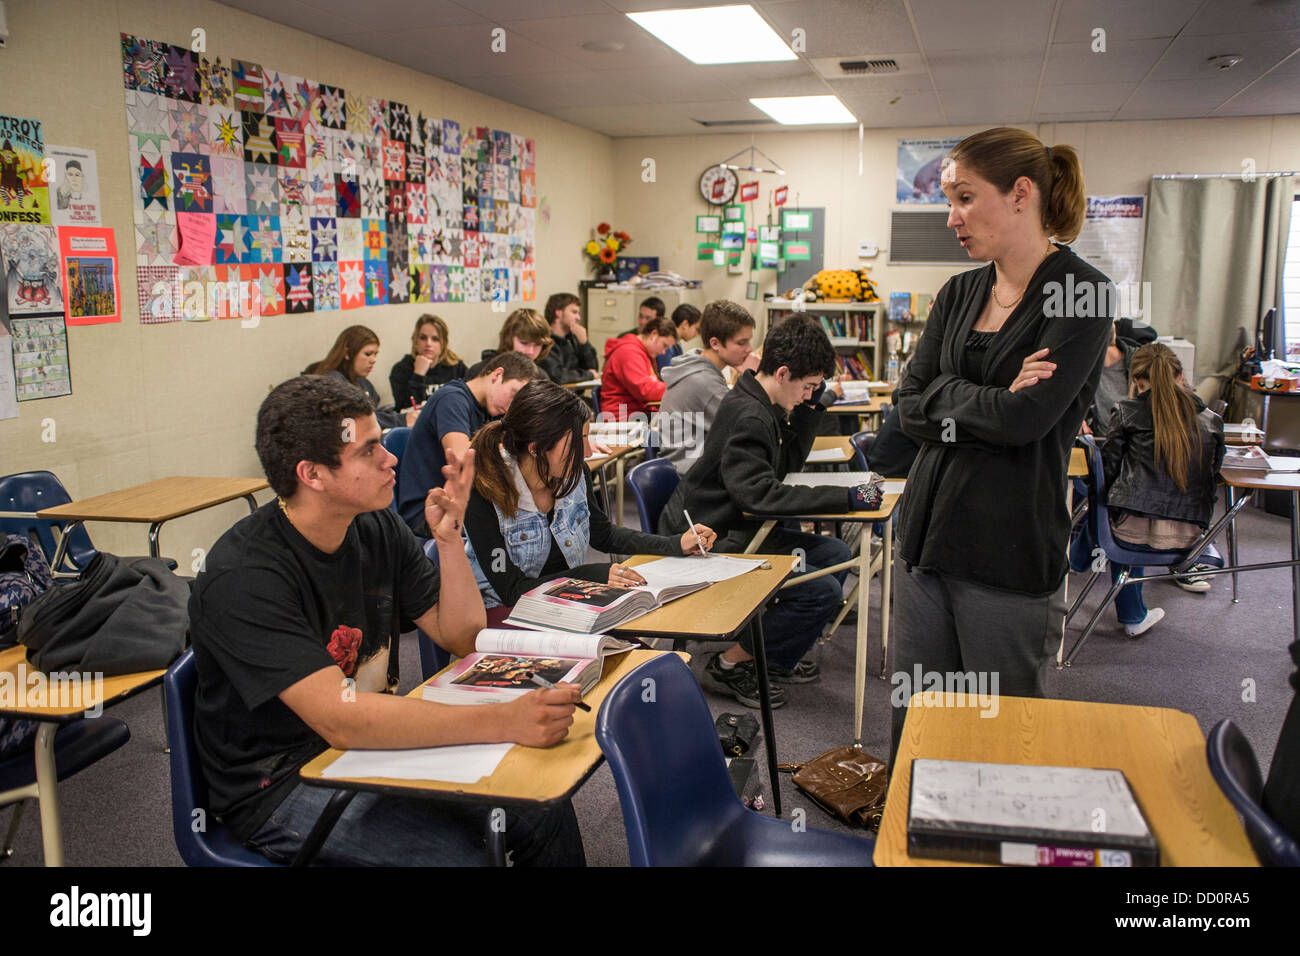 California high school insegnante di inglese assiste i suoi studenti comprensione durante una esercitazione di lettura tramite una antologia letteraria Foto Stock